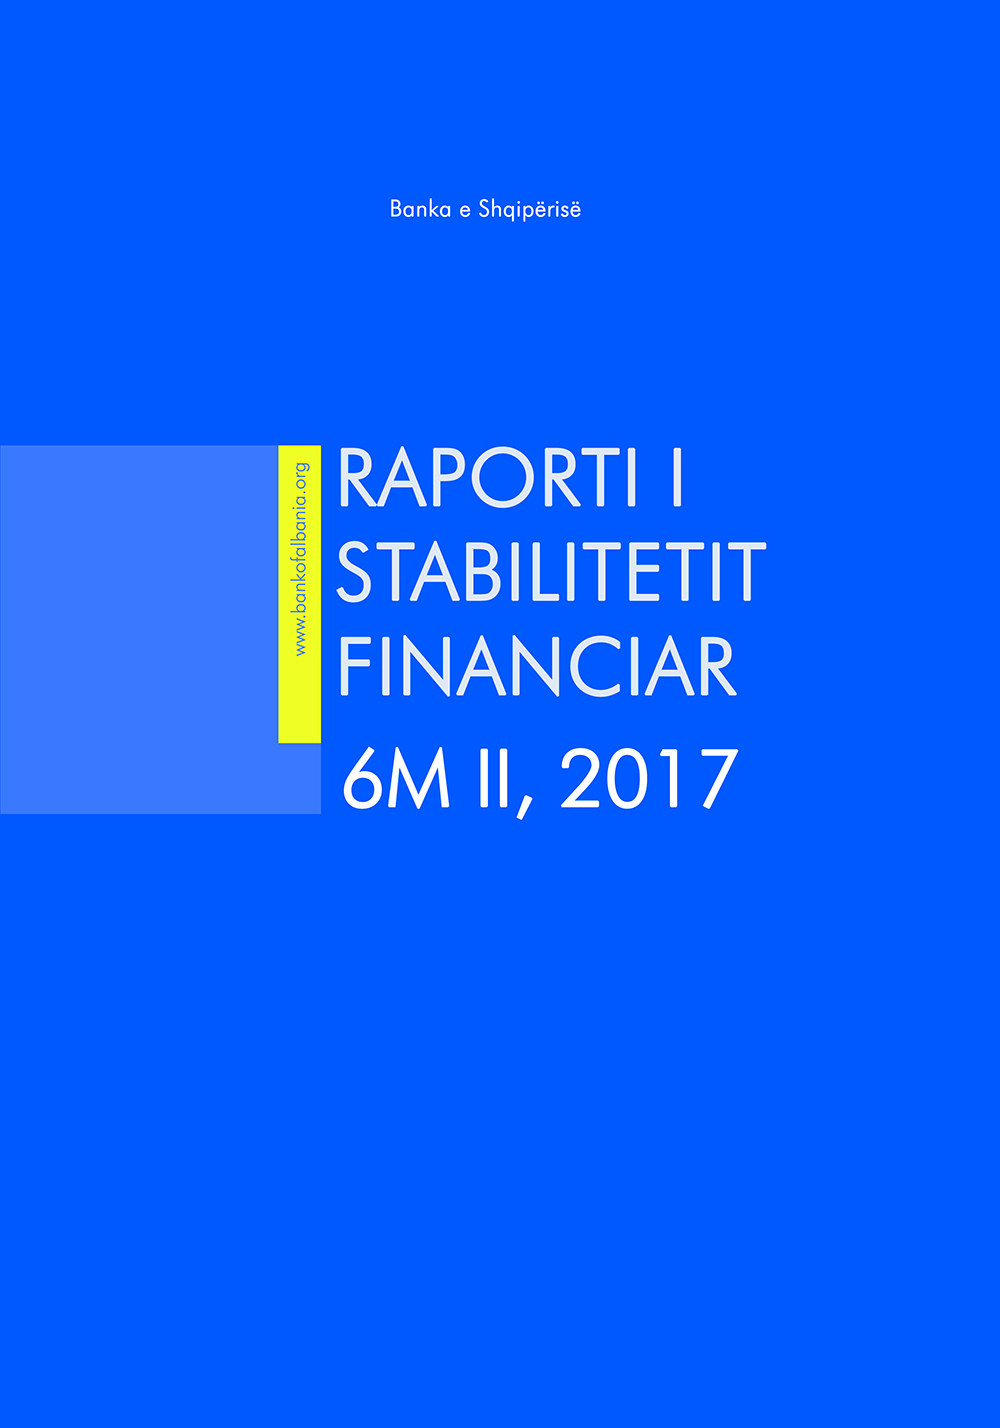 Raporti i Stabilitetit Financiar për gjashtëmujorin e dytë të vitit 2017